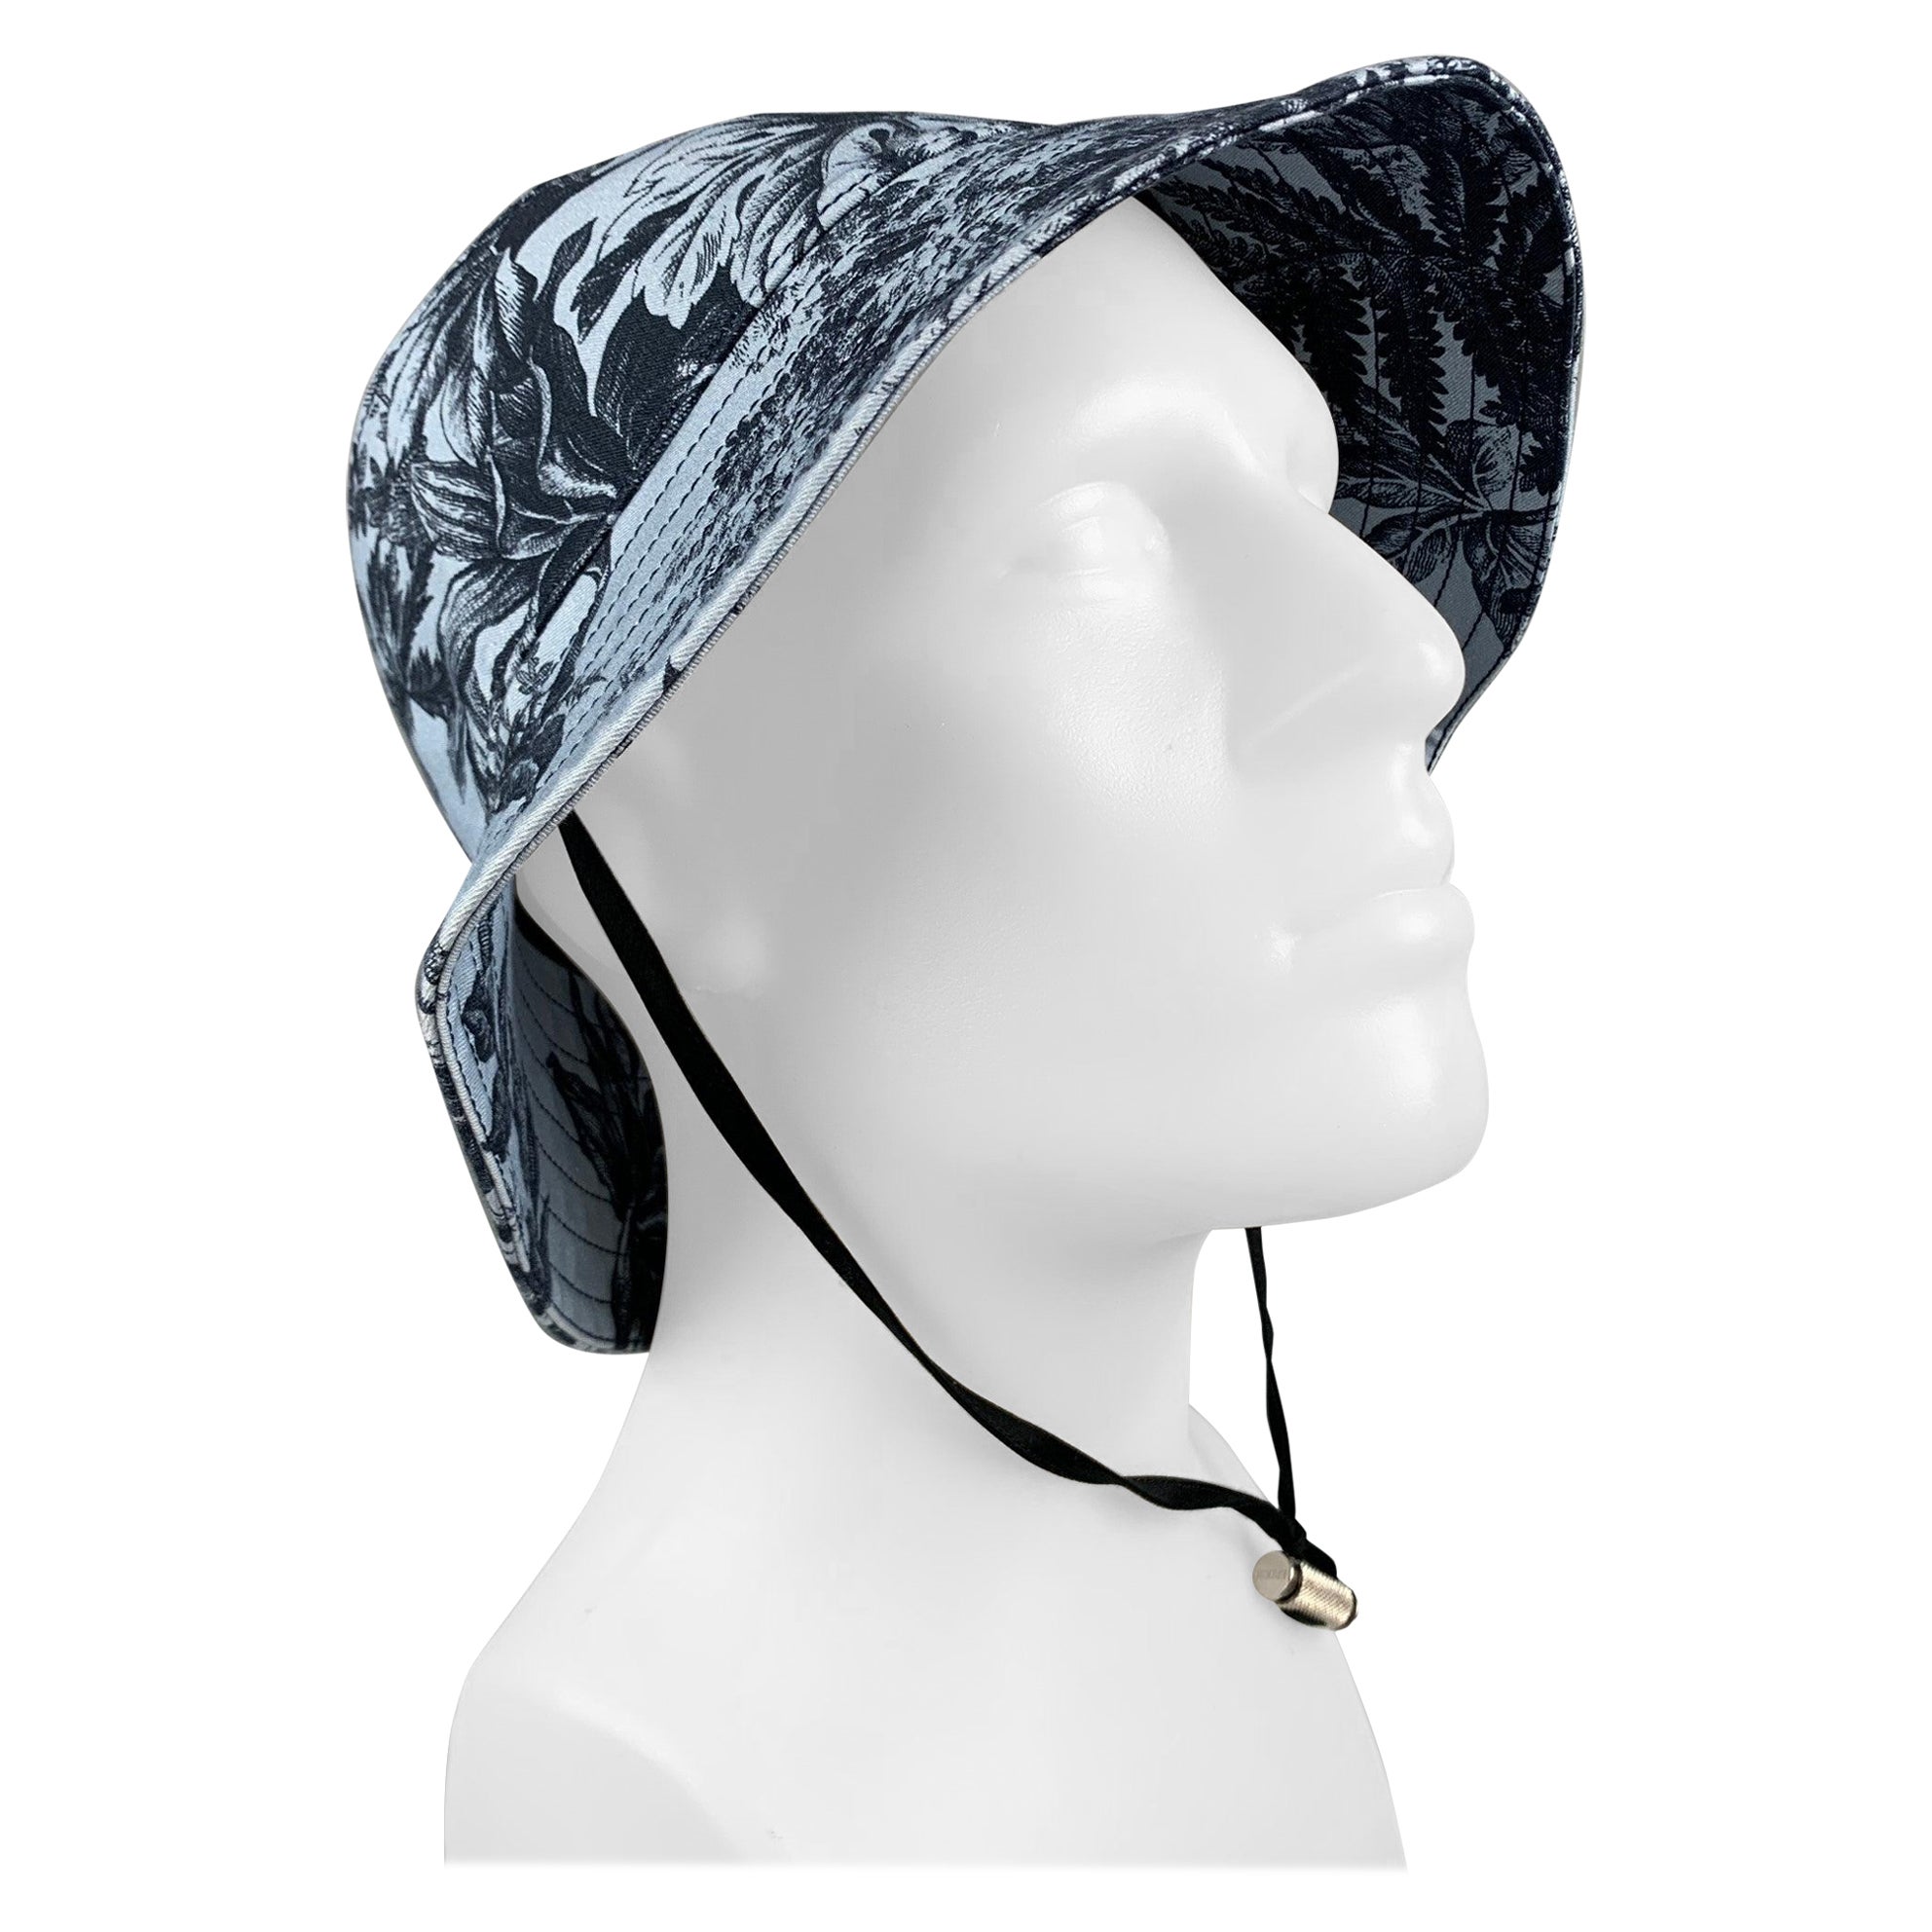 ERDEM - Chapeaux en toile de coton/Elastane à fleurs bleues et noires, taille M/L